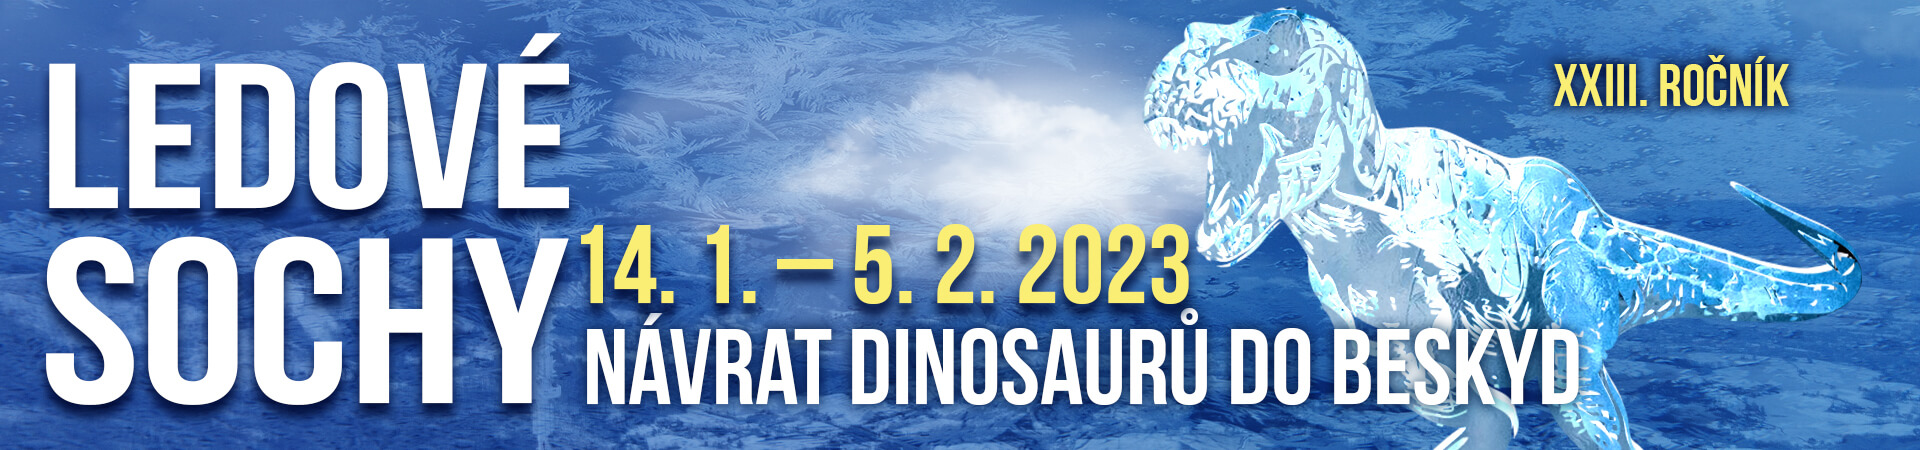 Ledové sochy 2023 - Návrat dinosaurů do Beskyd